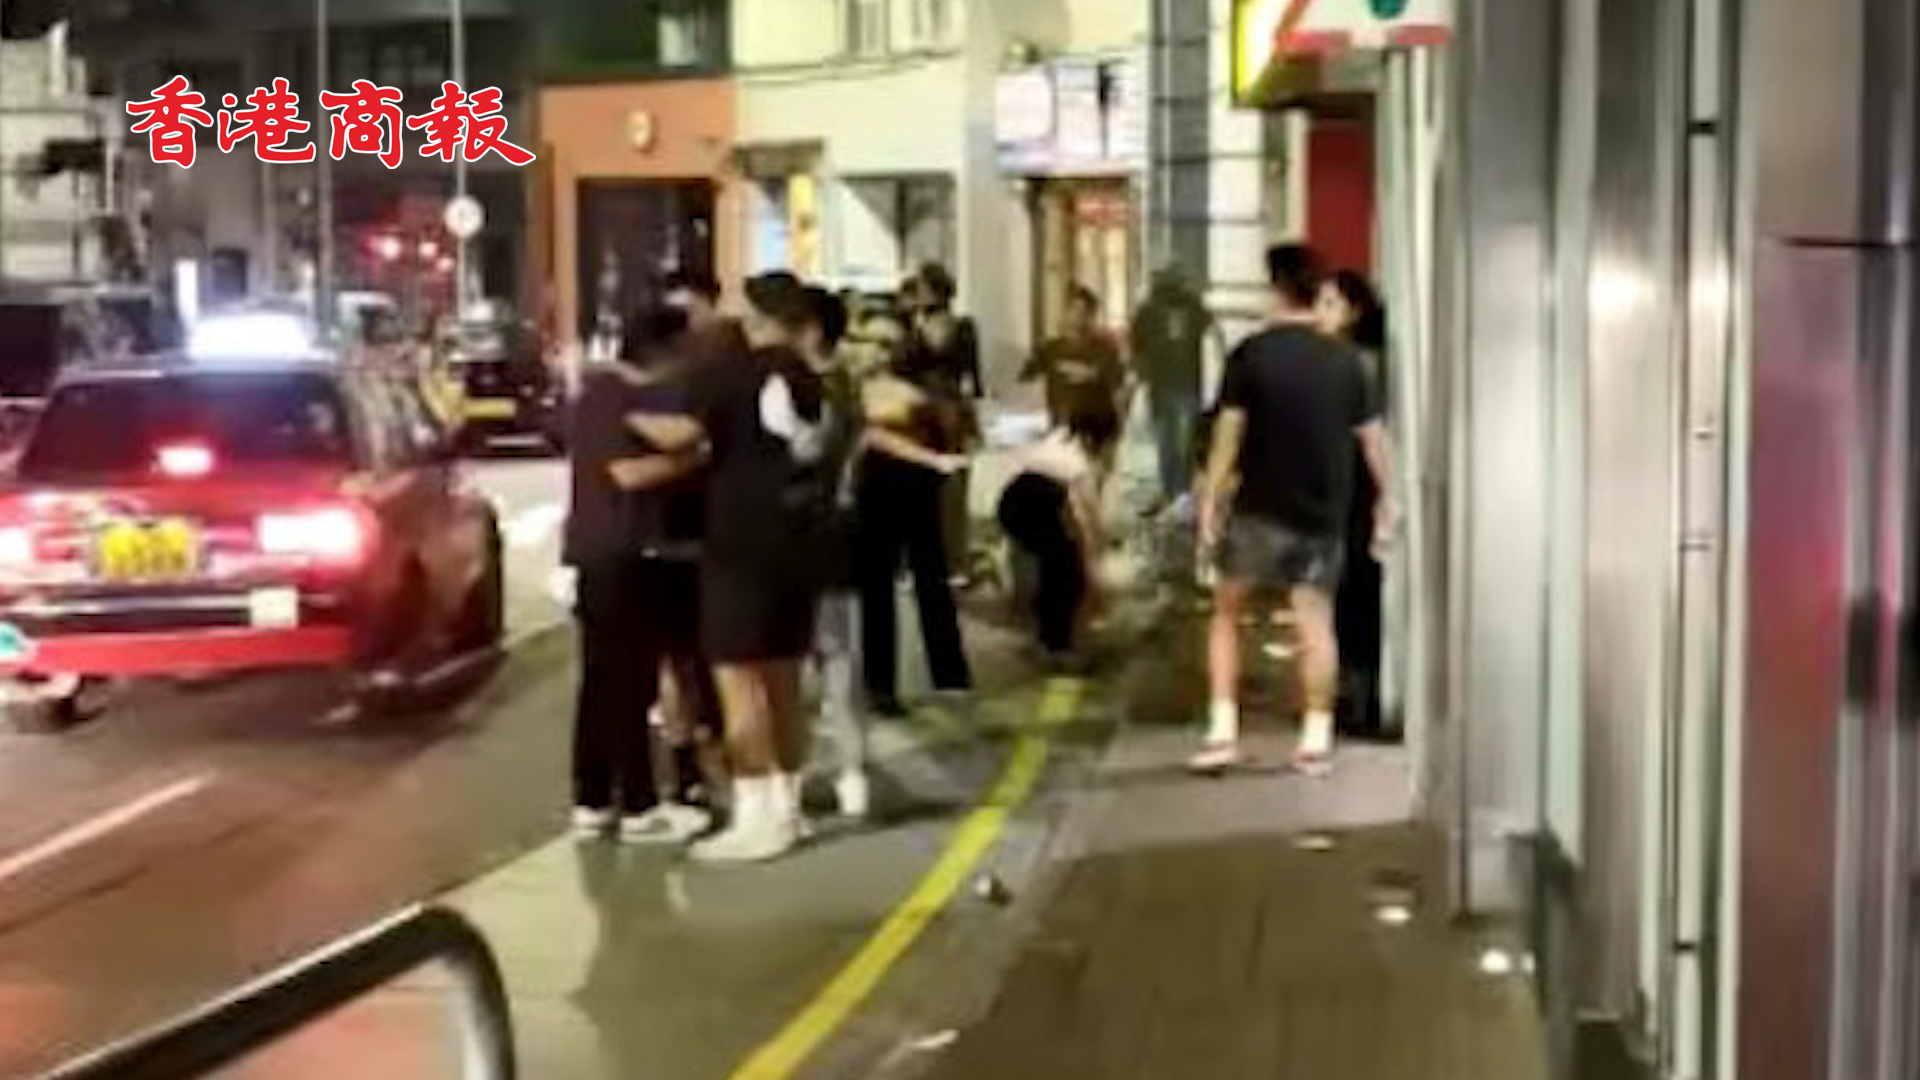 有片丨香港中環20人街頭大混戰 互揮拳擲雜物 3人受傷